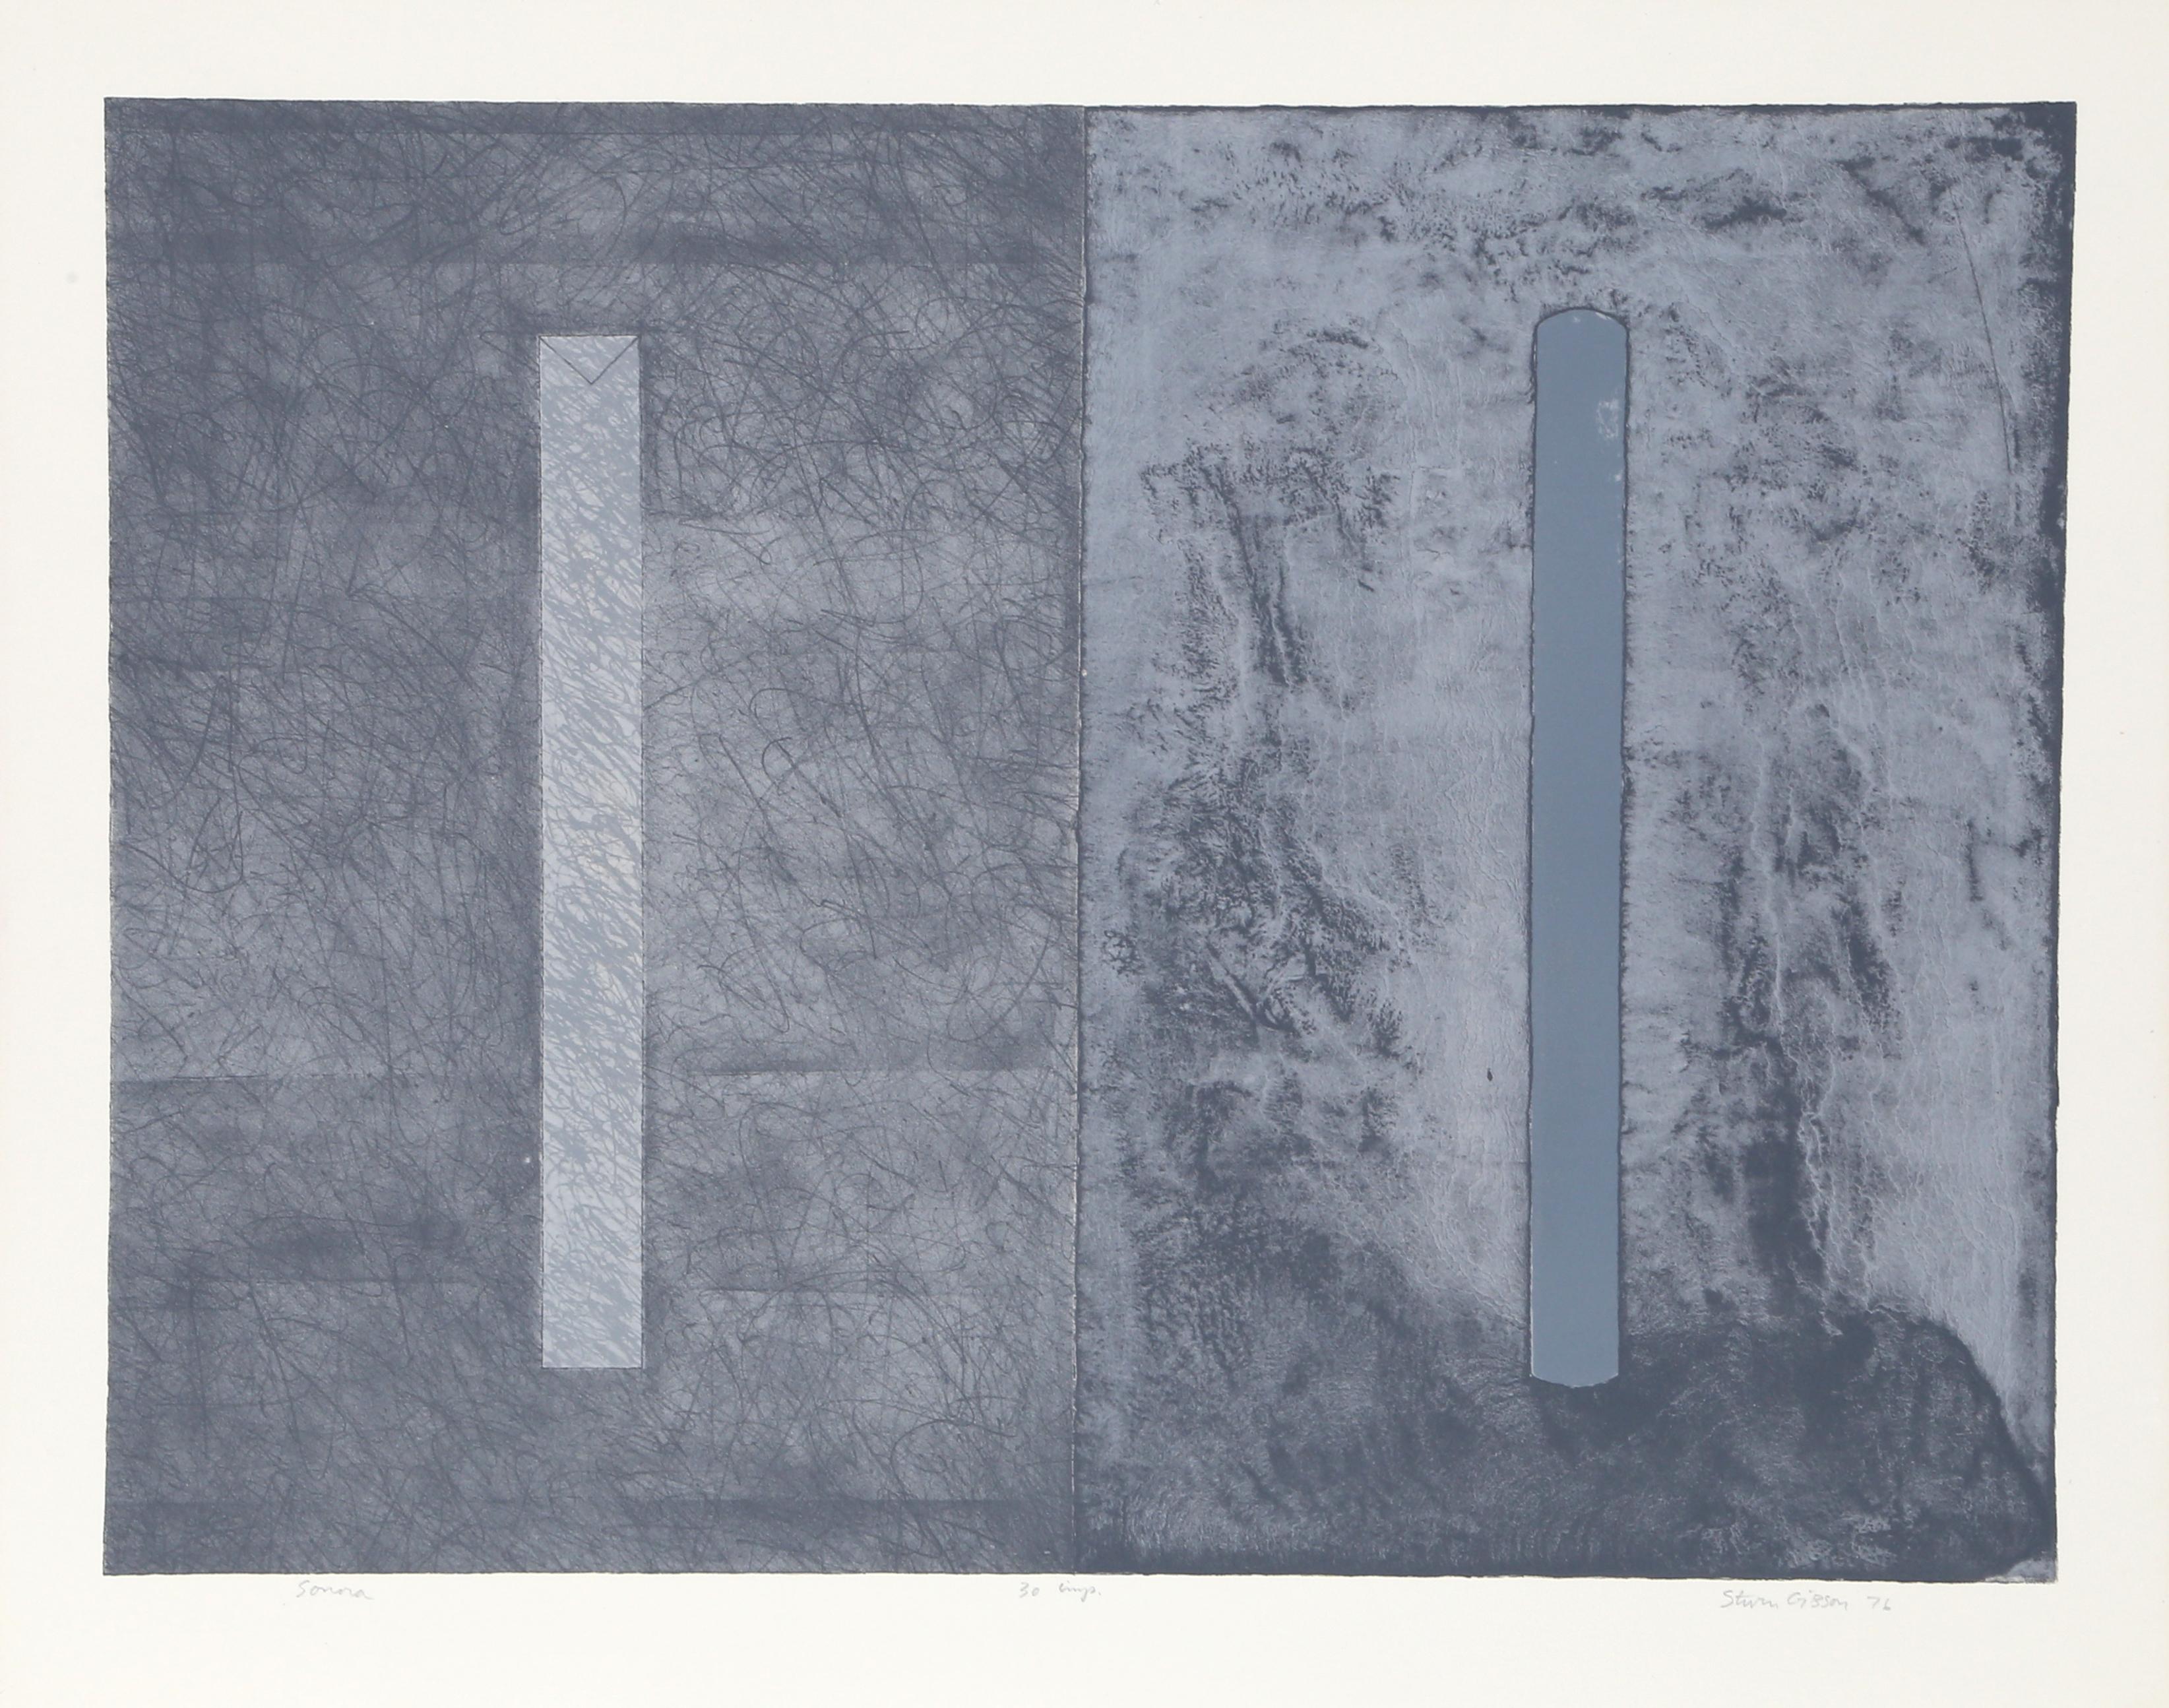 Künstler: Steve Gibson, Amerikaner
Titel: Sonora
Jahr: 1976
Medium: Lithographie, mit Bleistift signiert und nummeriert
Auflage: 30
Bildgröße: 18,75 x 25 Zoll
Größe: 22 x 28 in. (55,88 x 71,12 cm)